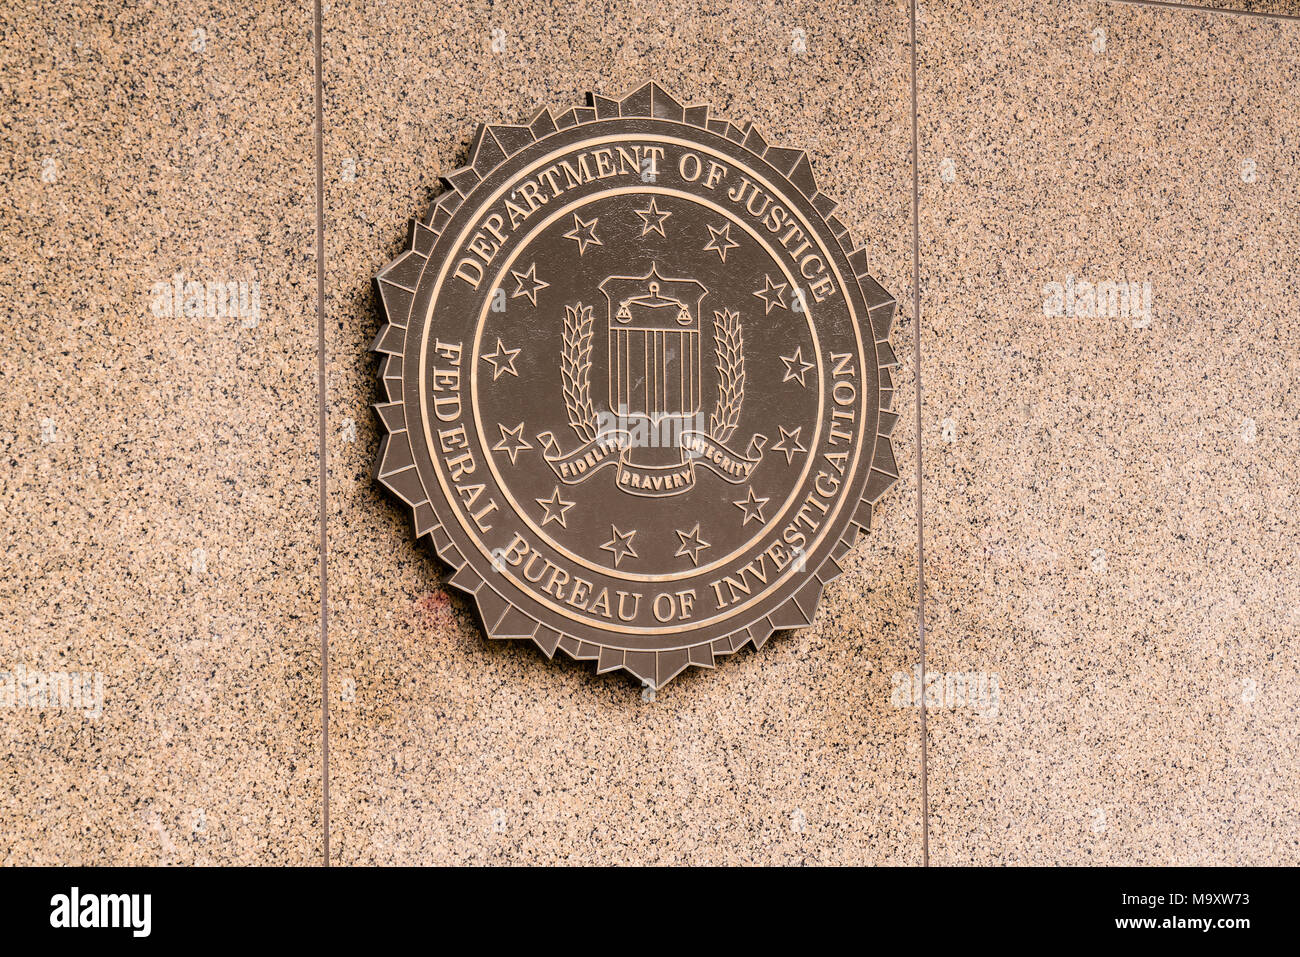 WASHINGTON, DC - Marzo 14, 2018: el sello de la Oficina Federal de Investigación en el J. Edgar Hoover, el edificio del FBI en Washington, D.C. Foto de stock